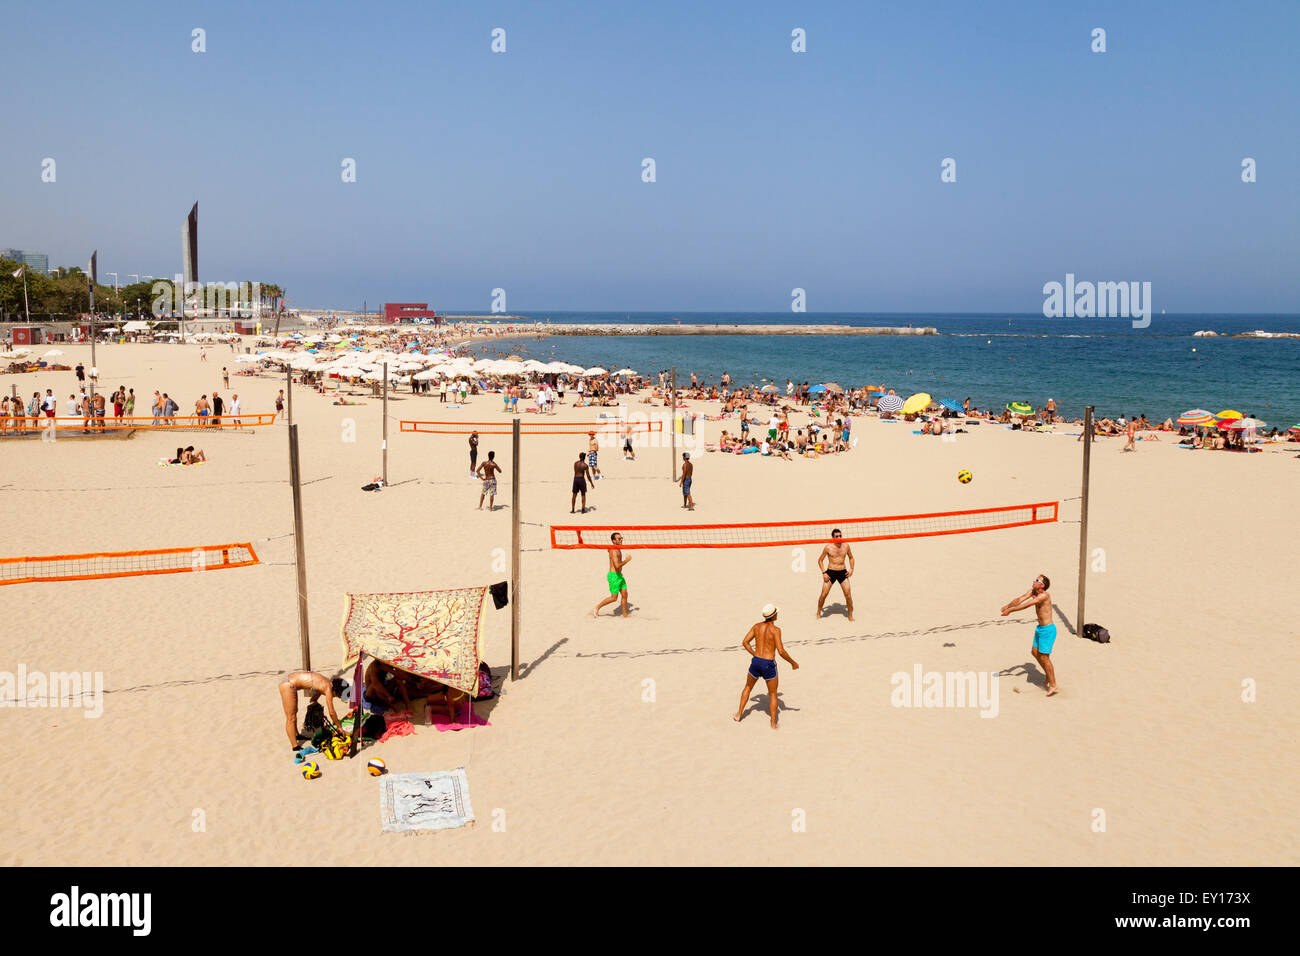 Les gens jouer au volley-ball sur plage Platja Nova Icaria, Port Olympique, Barcelone, Espagne Europe Banque D'Images